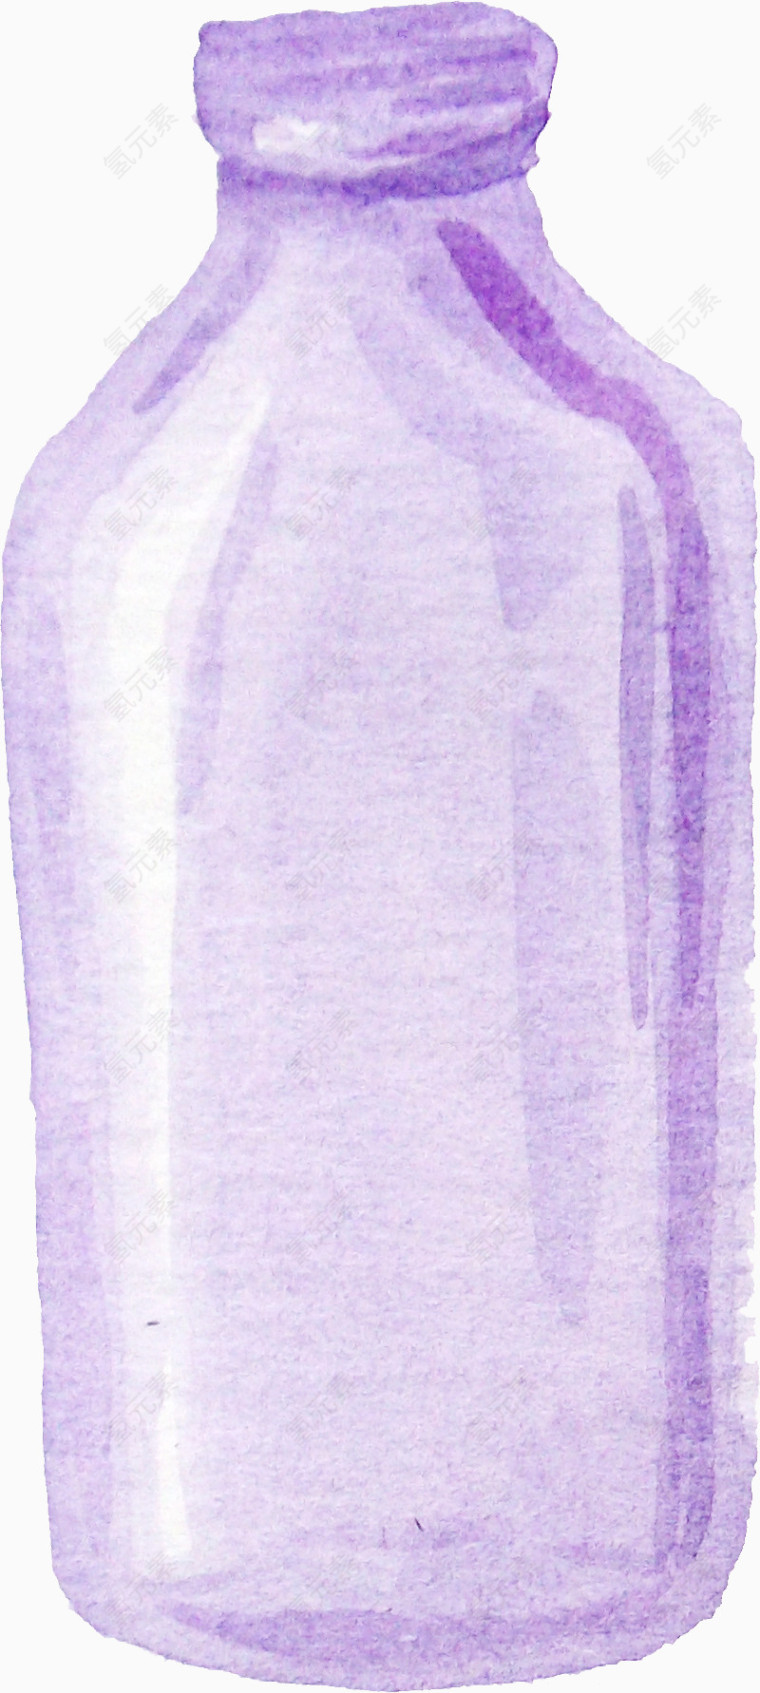 水粉手绘紫色可爱玻璃瓶